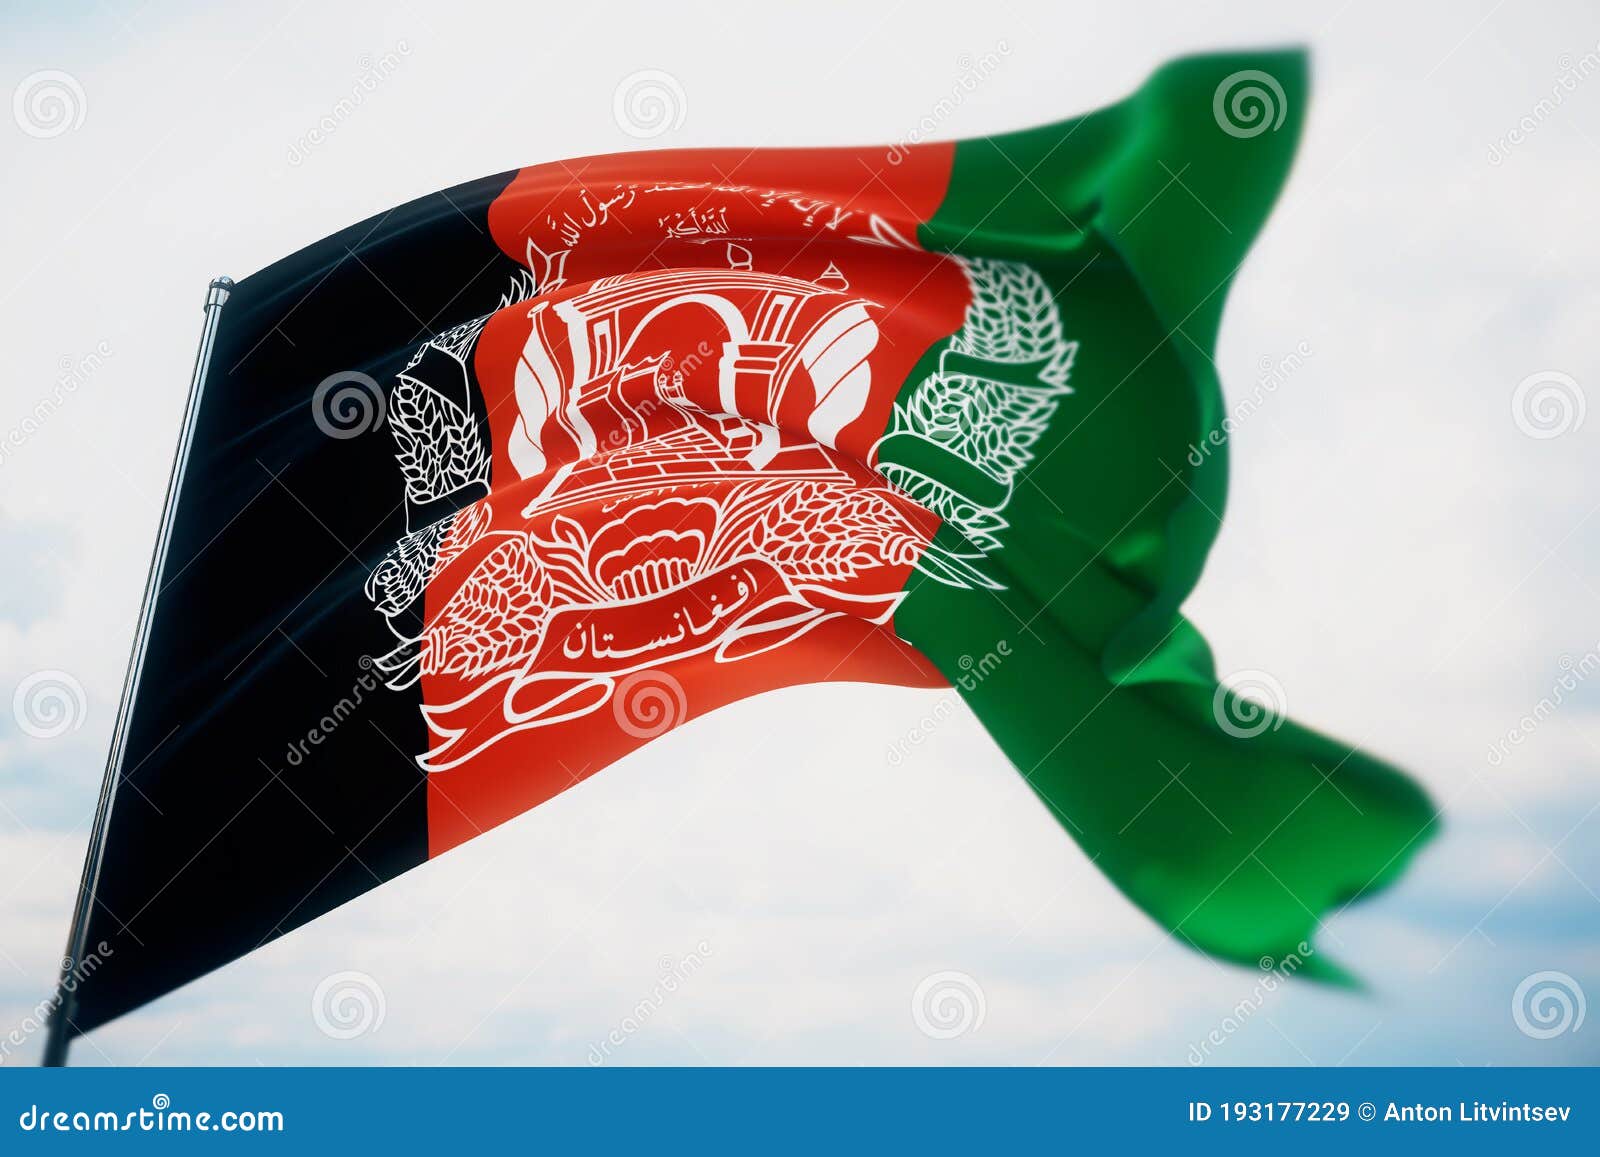 阿富汗國旗插圖畫筆矢量圖, 阿富汗国旗, 阿富汗國旗, 國旗向量圖案素材免費下載，PNG，EPS和AI素材下載 - Pngtree